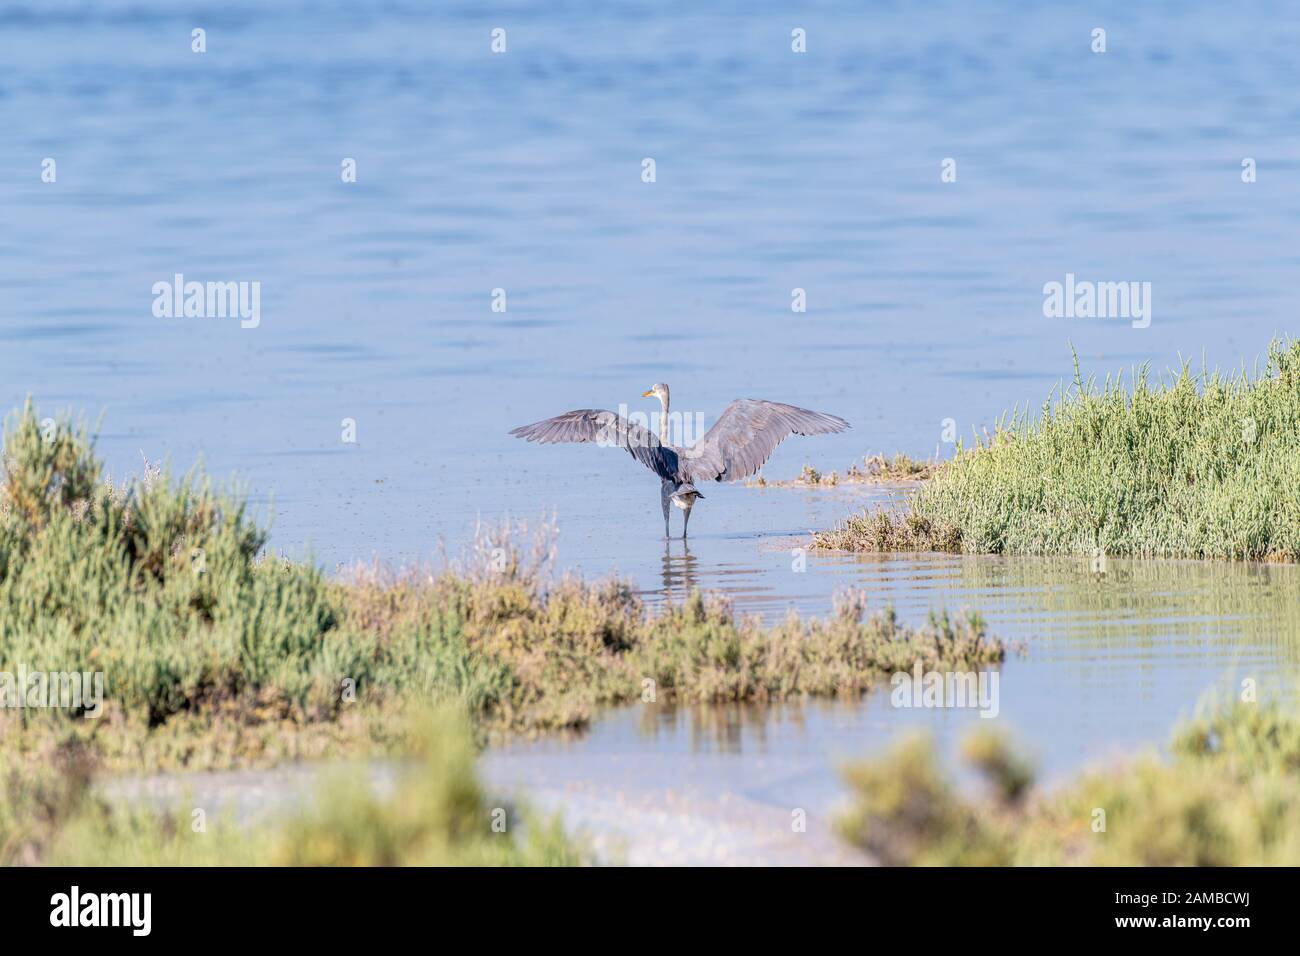 Grand héron bleu avec ses ailes déployées debout dans les eaux d'une mangrove Banque D'Images